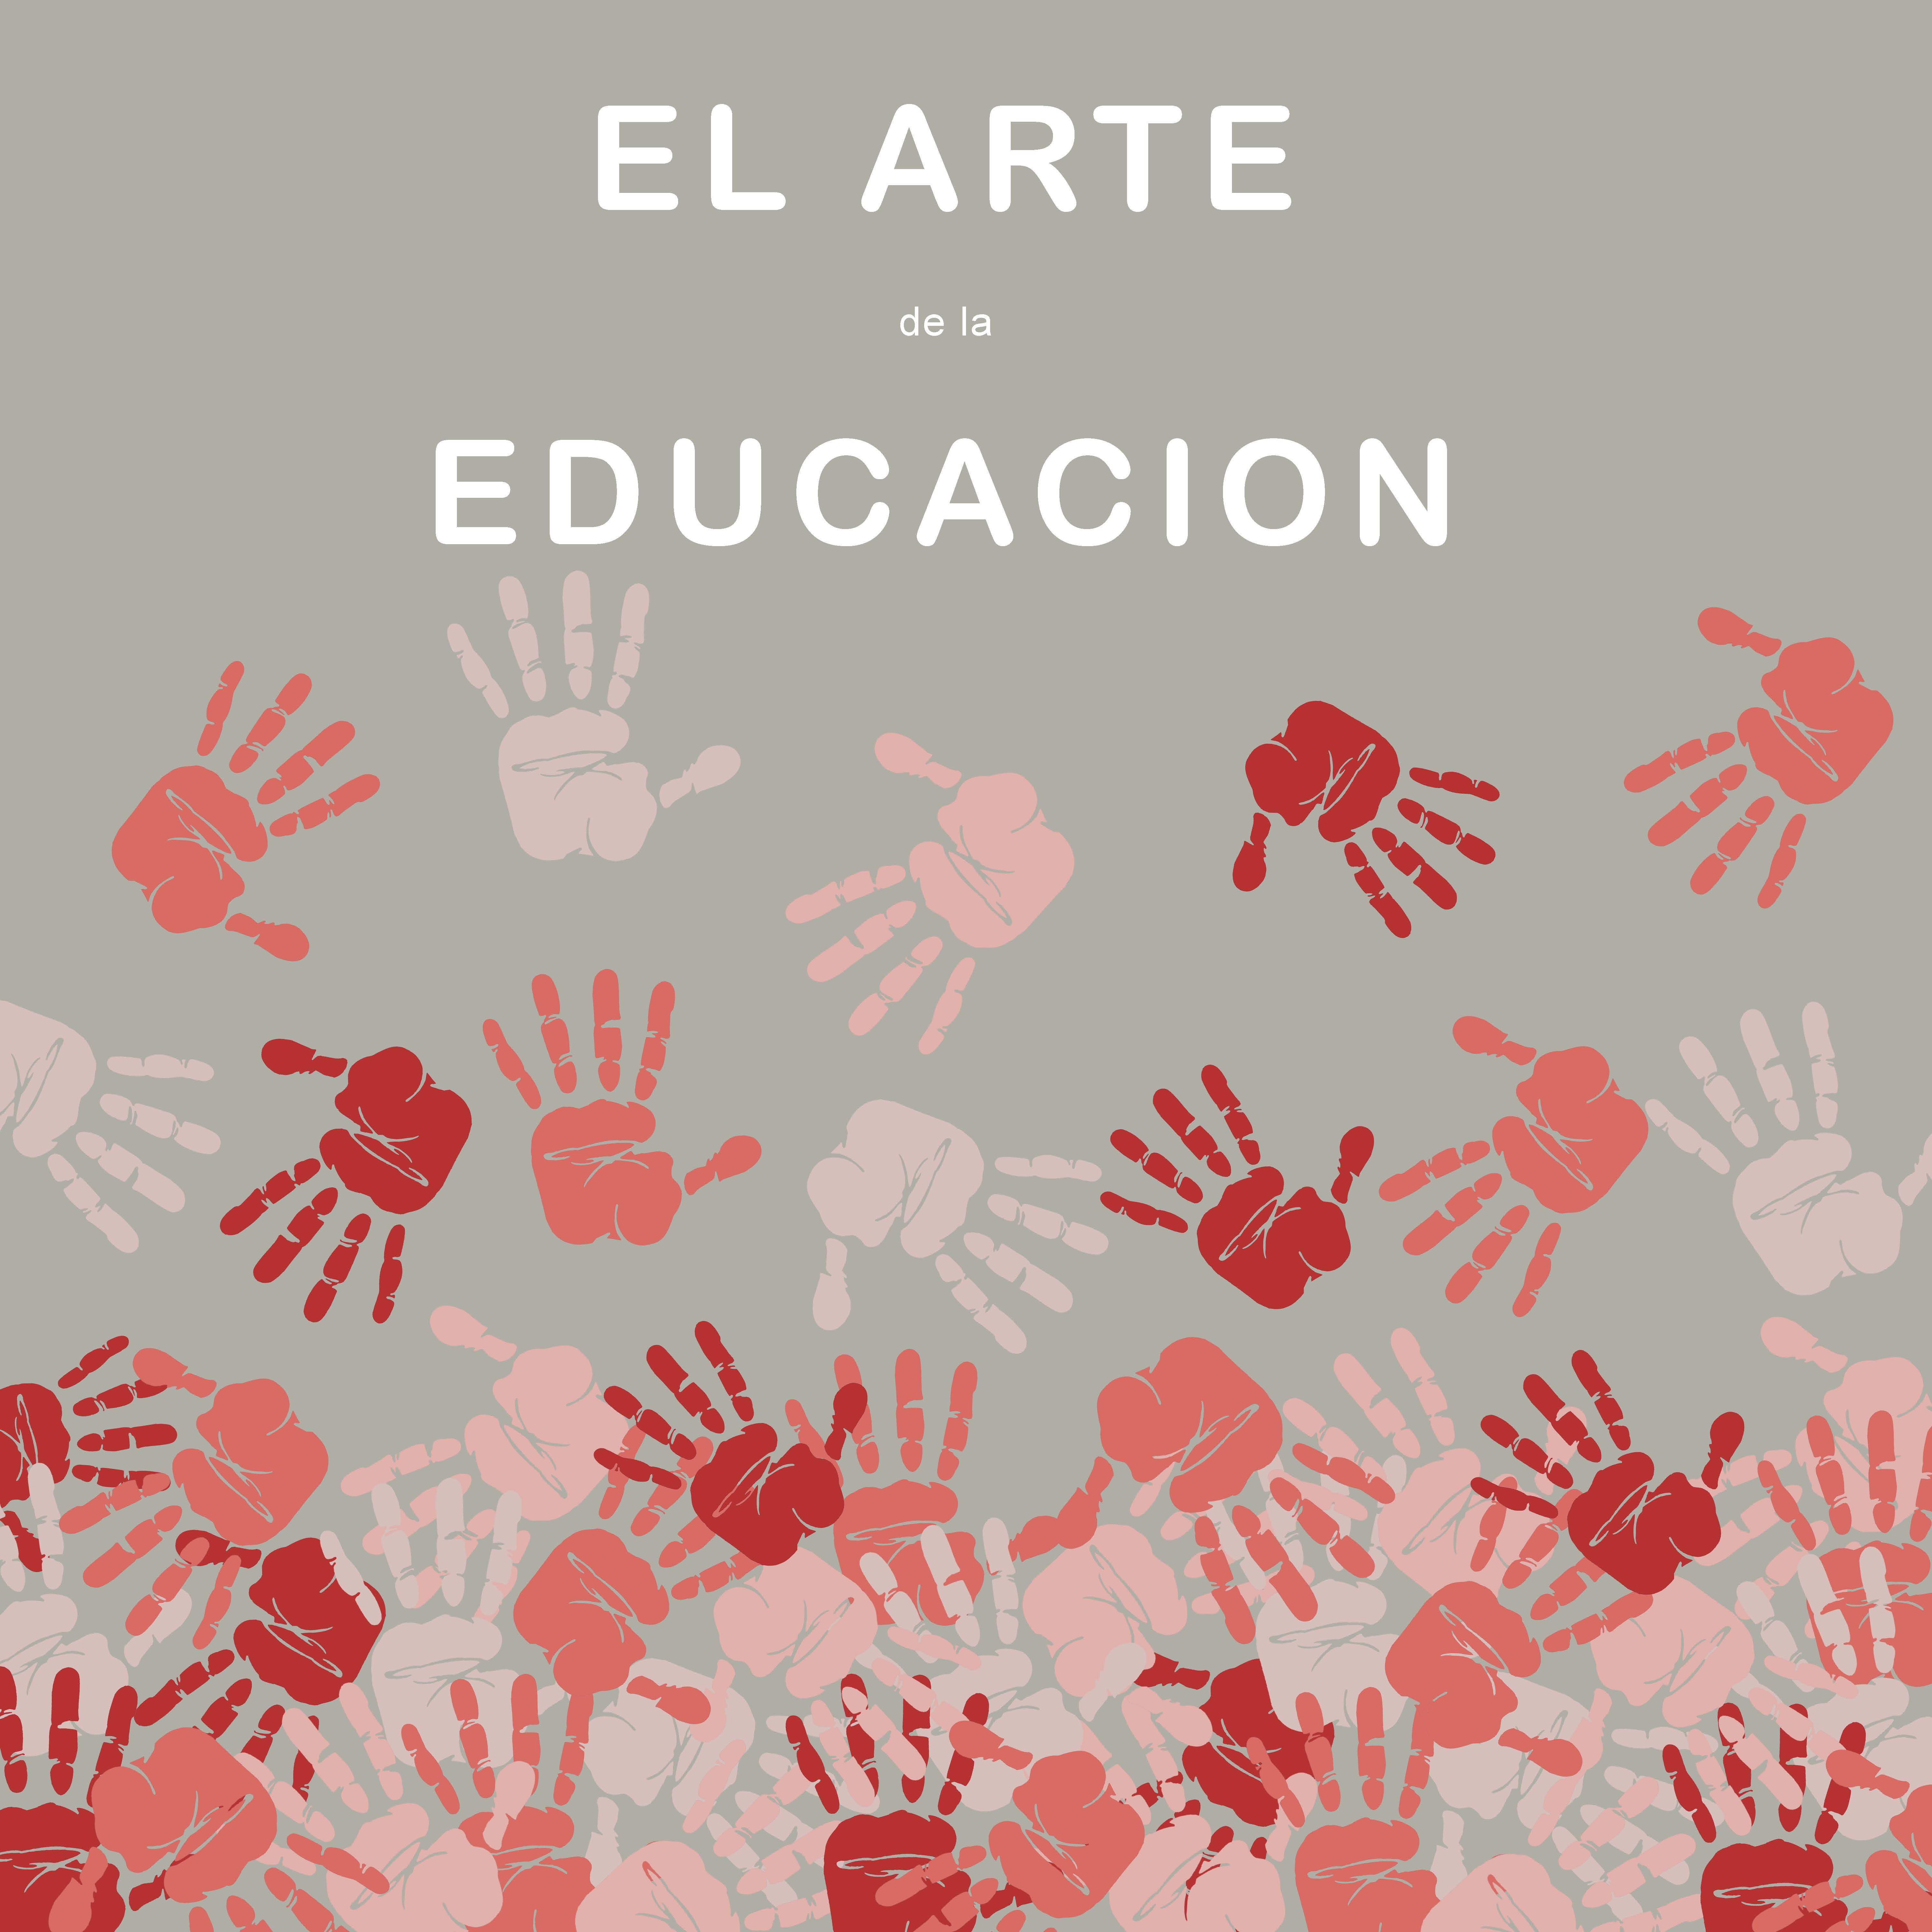 El Arte de la Educacion   (click for a larger preview)